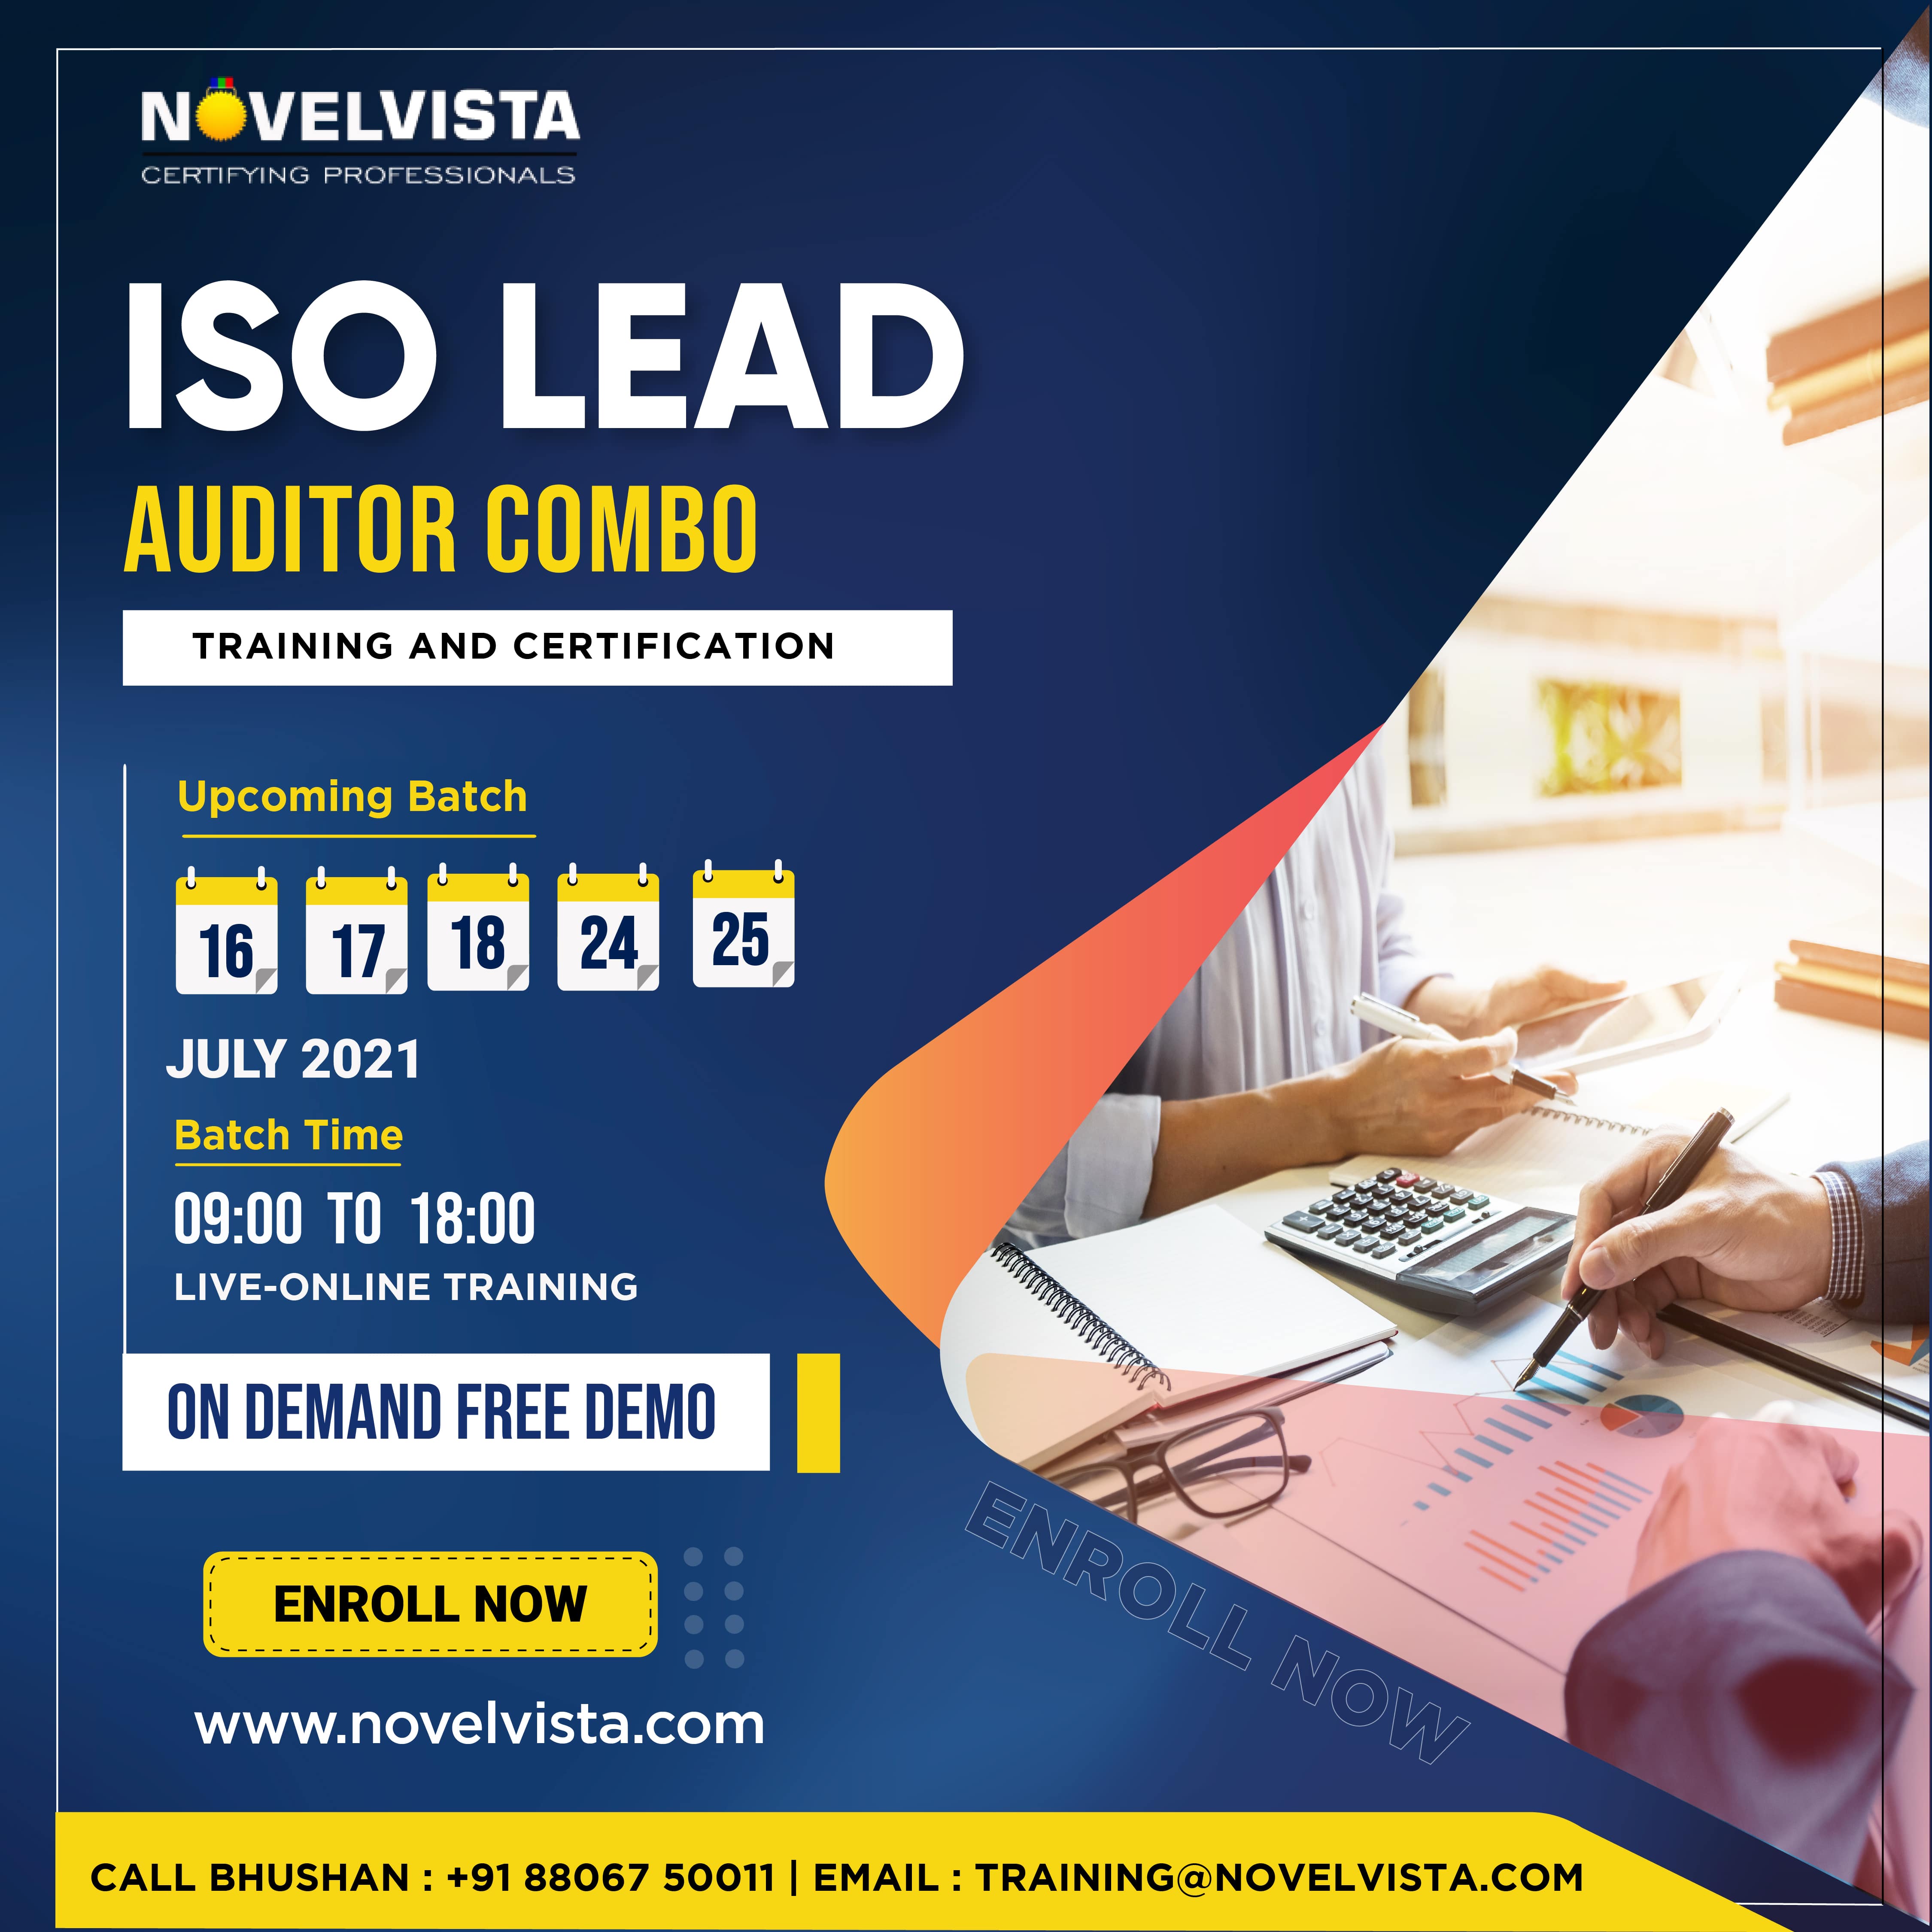 ISO Lead Auditor Combo Certification Training, Bangalore, Karnataka, India